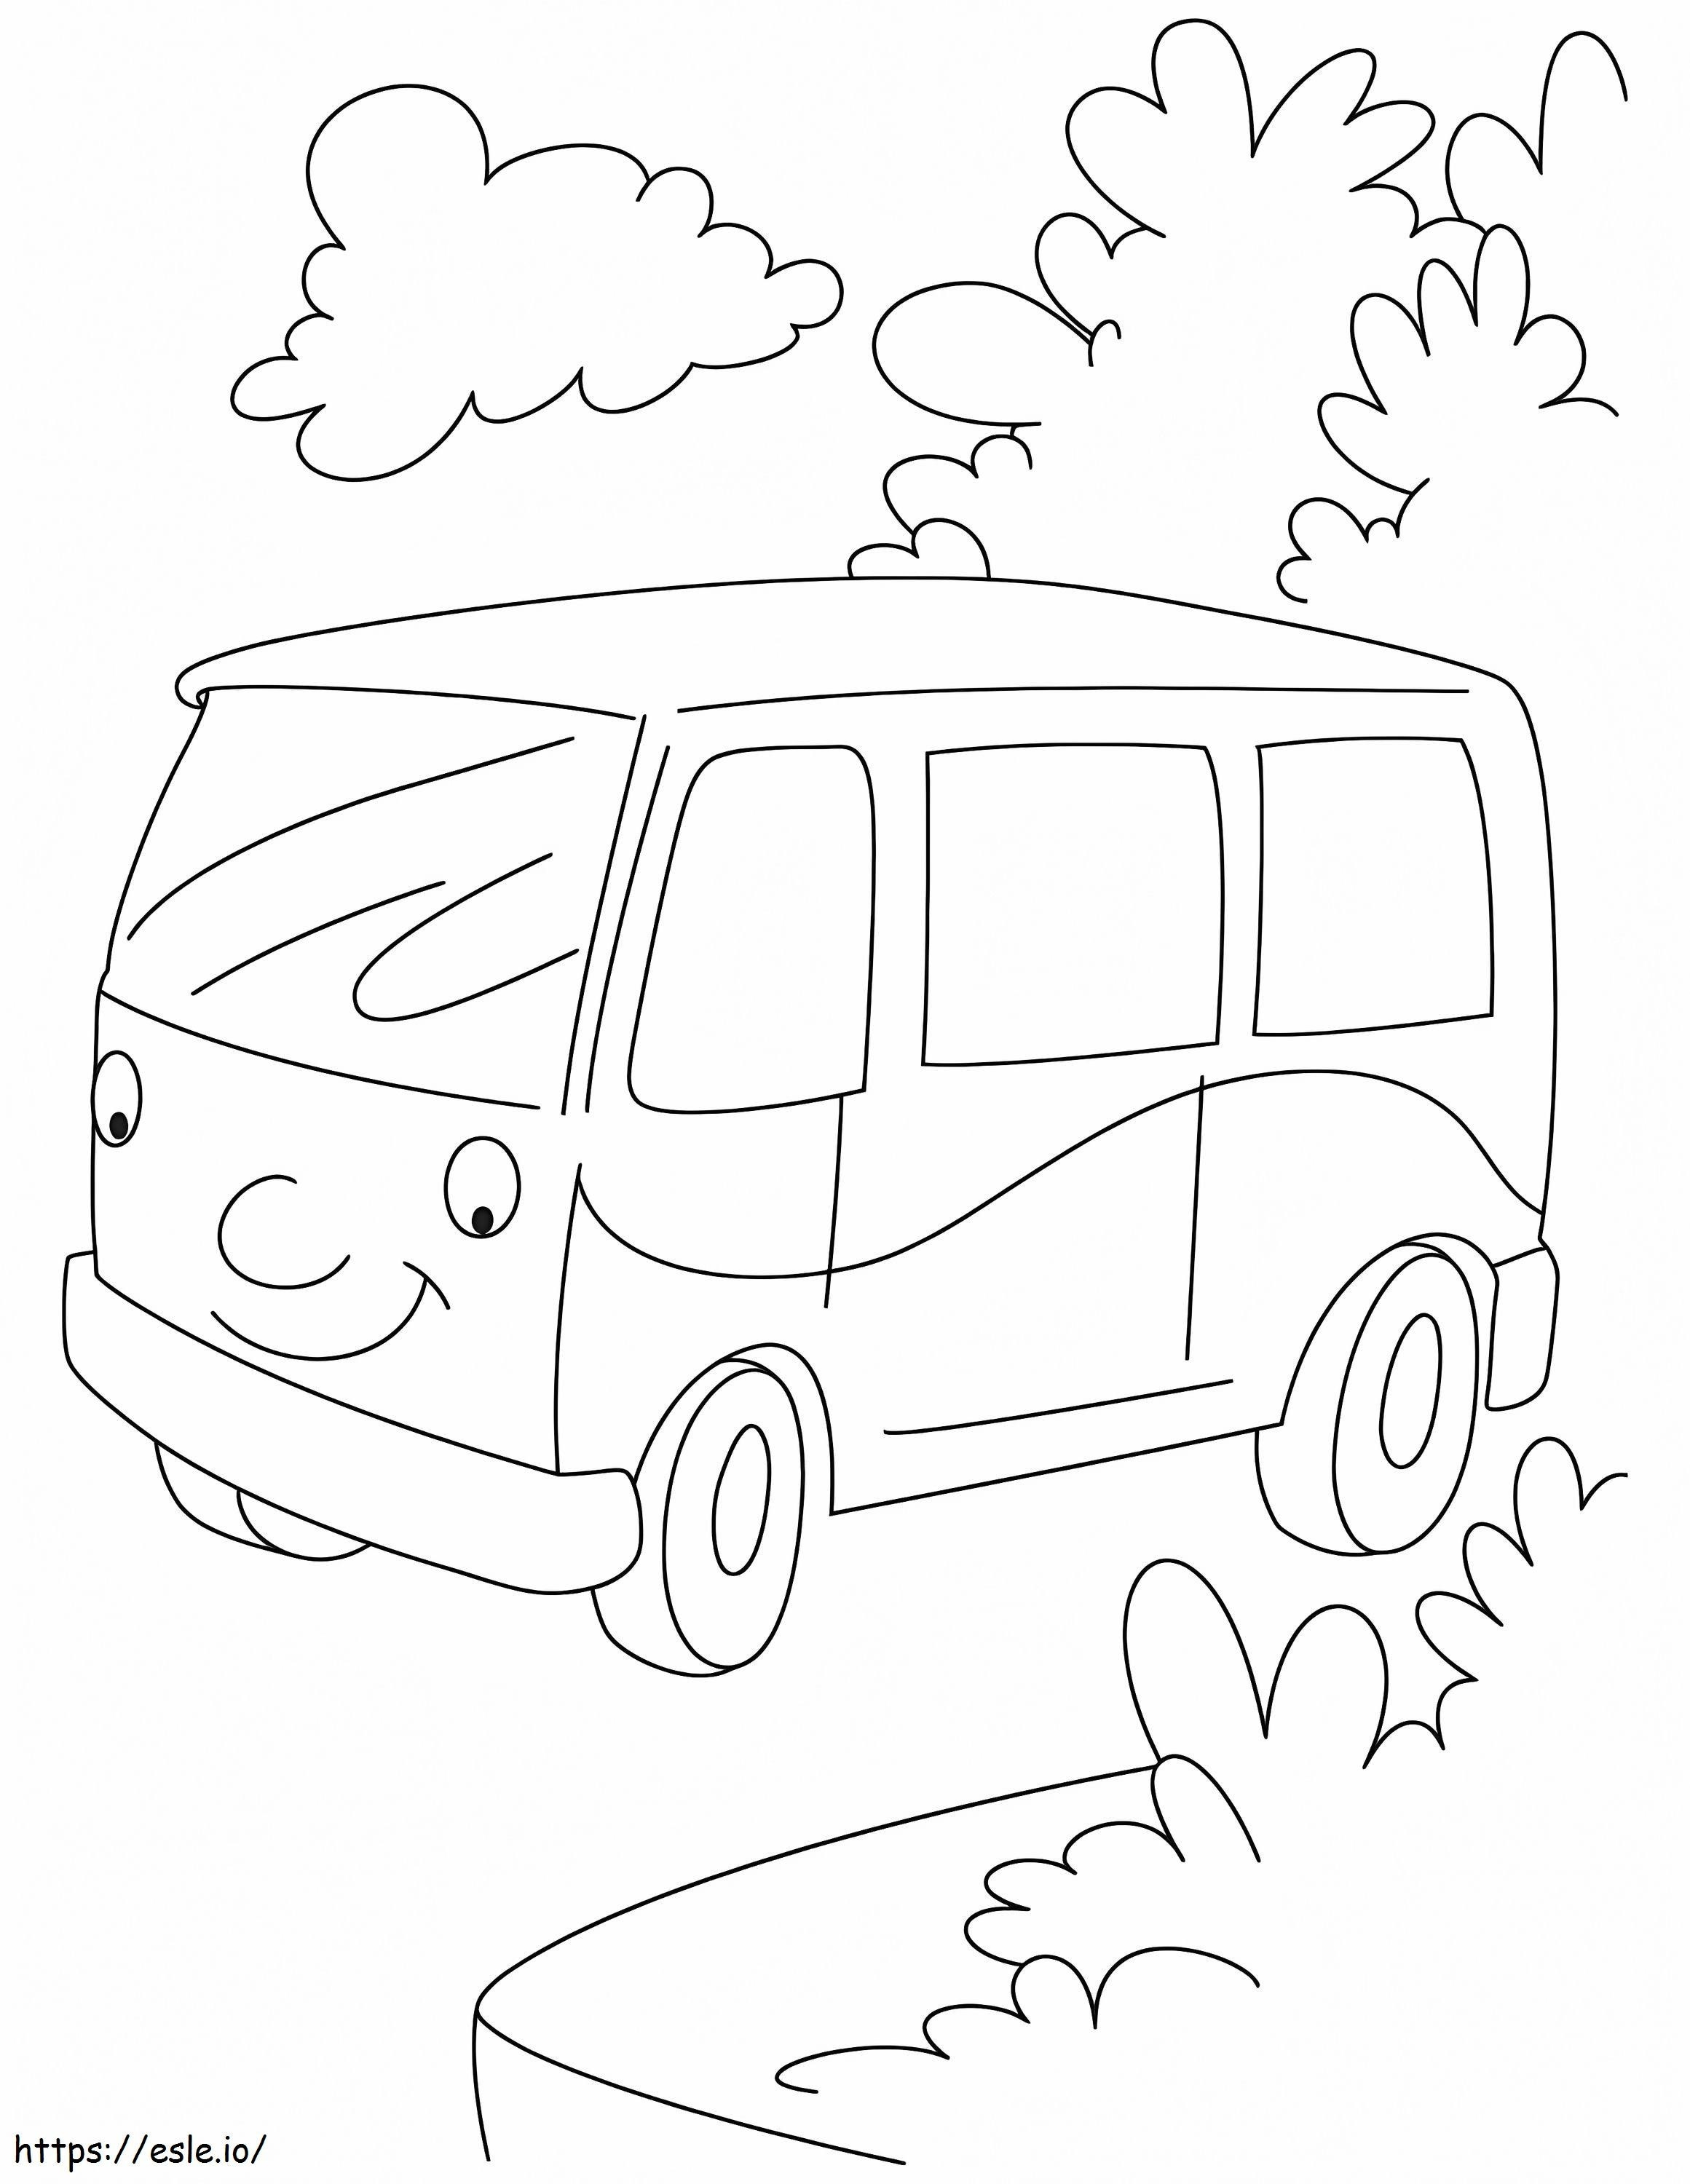 Happy Van coloring page